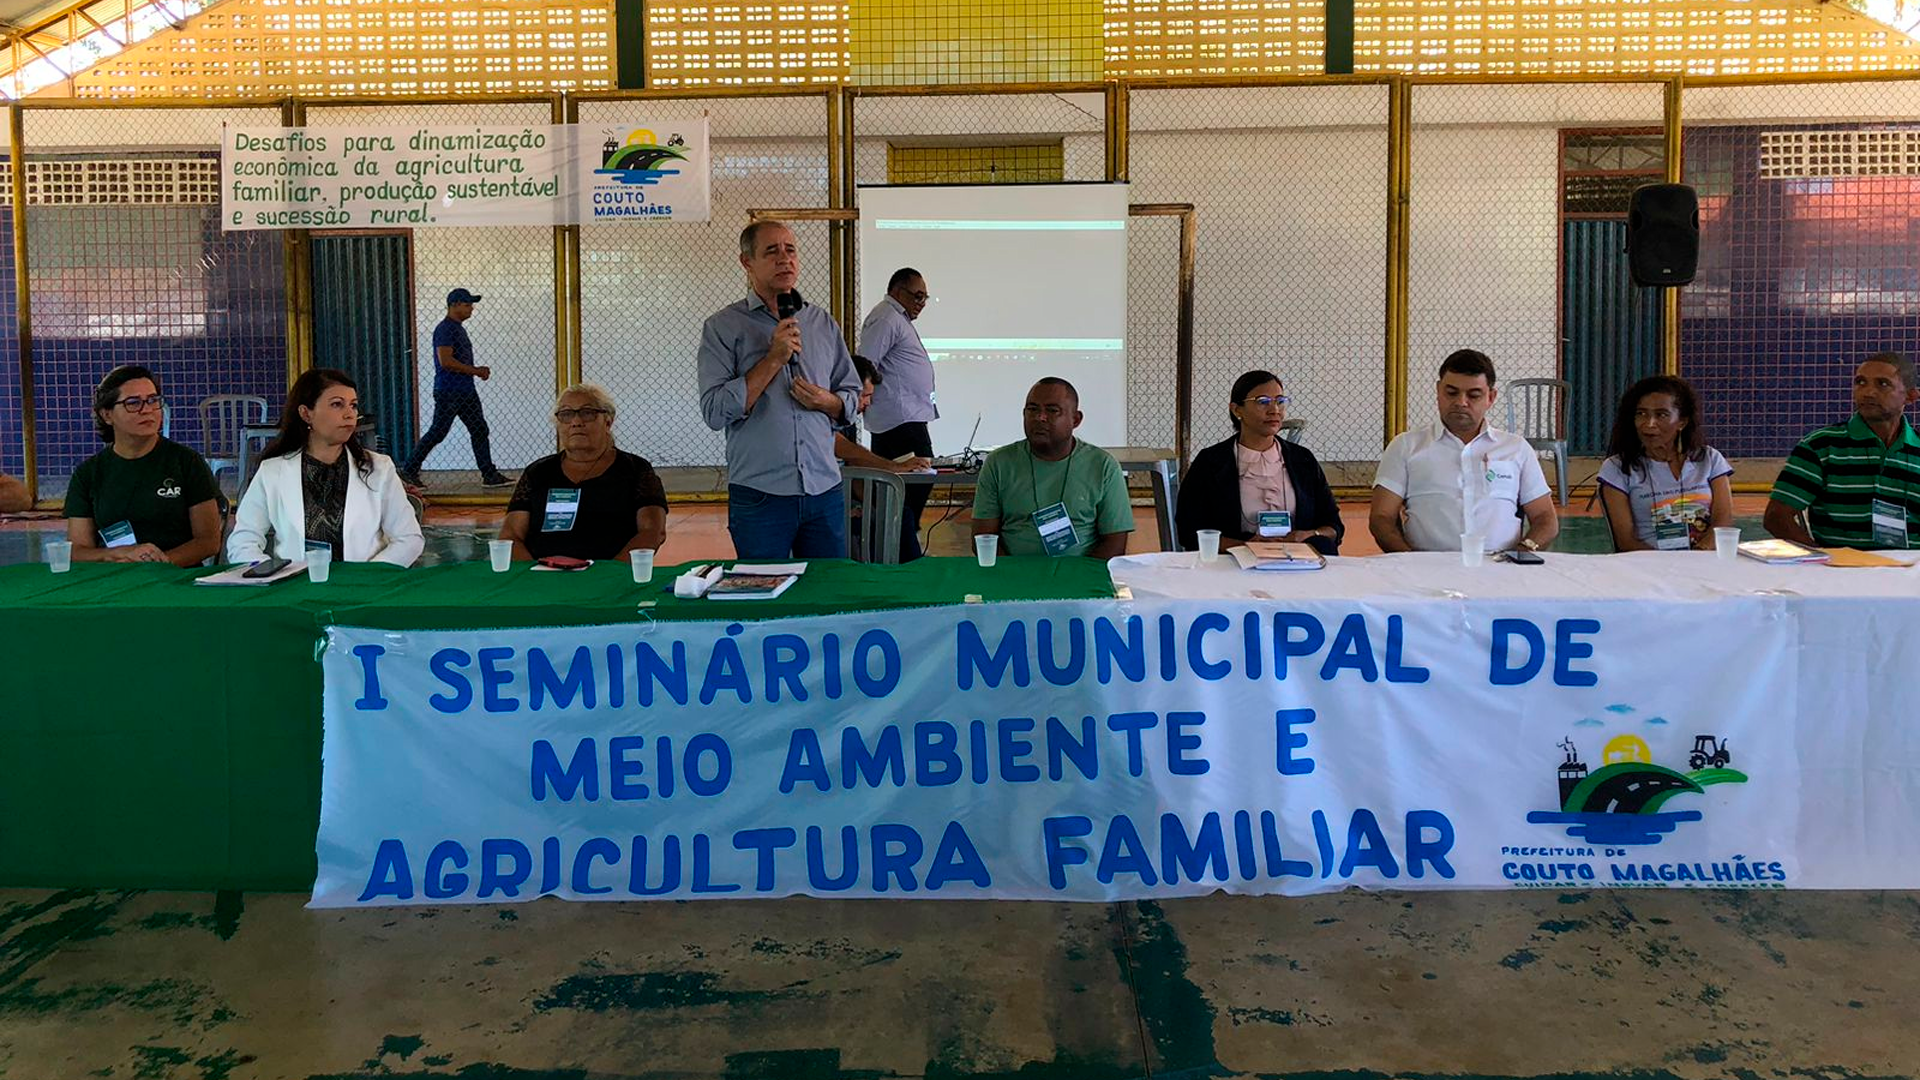 I Seminário Municipal de Meio Ambiente e Agricultura Familiar acontece em Couto Magalhães